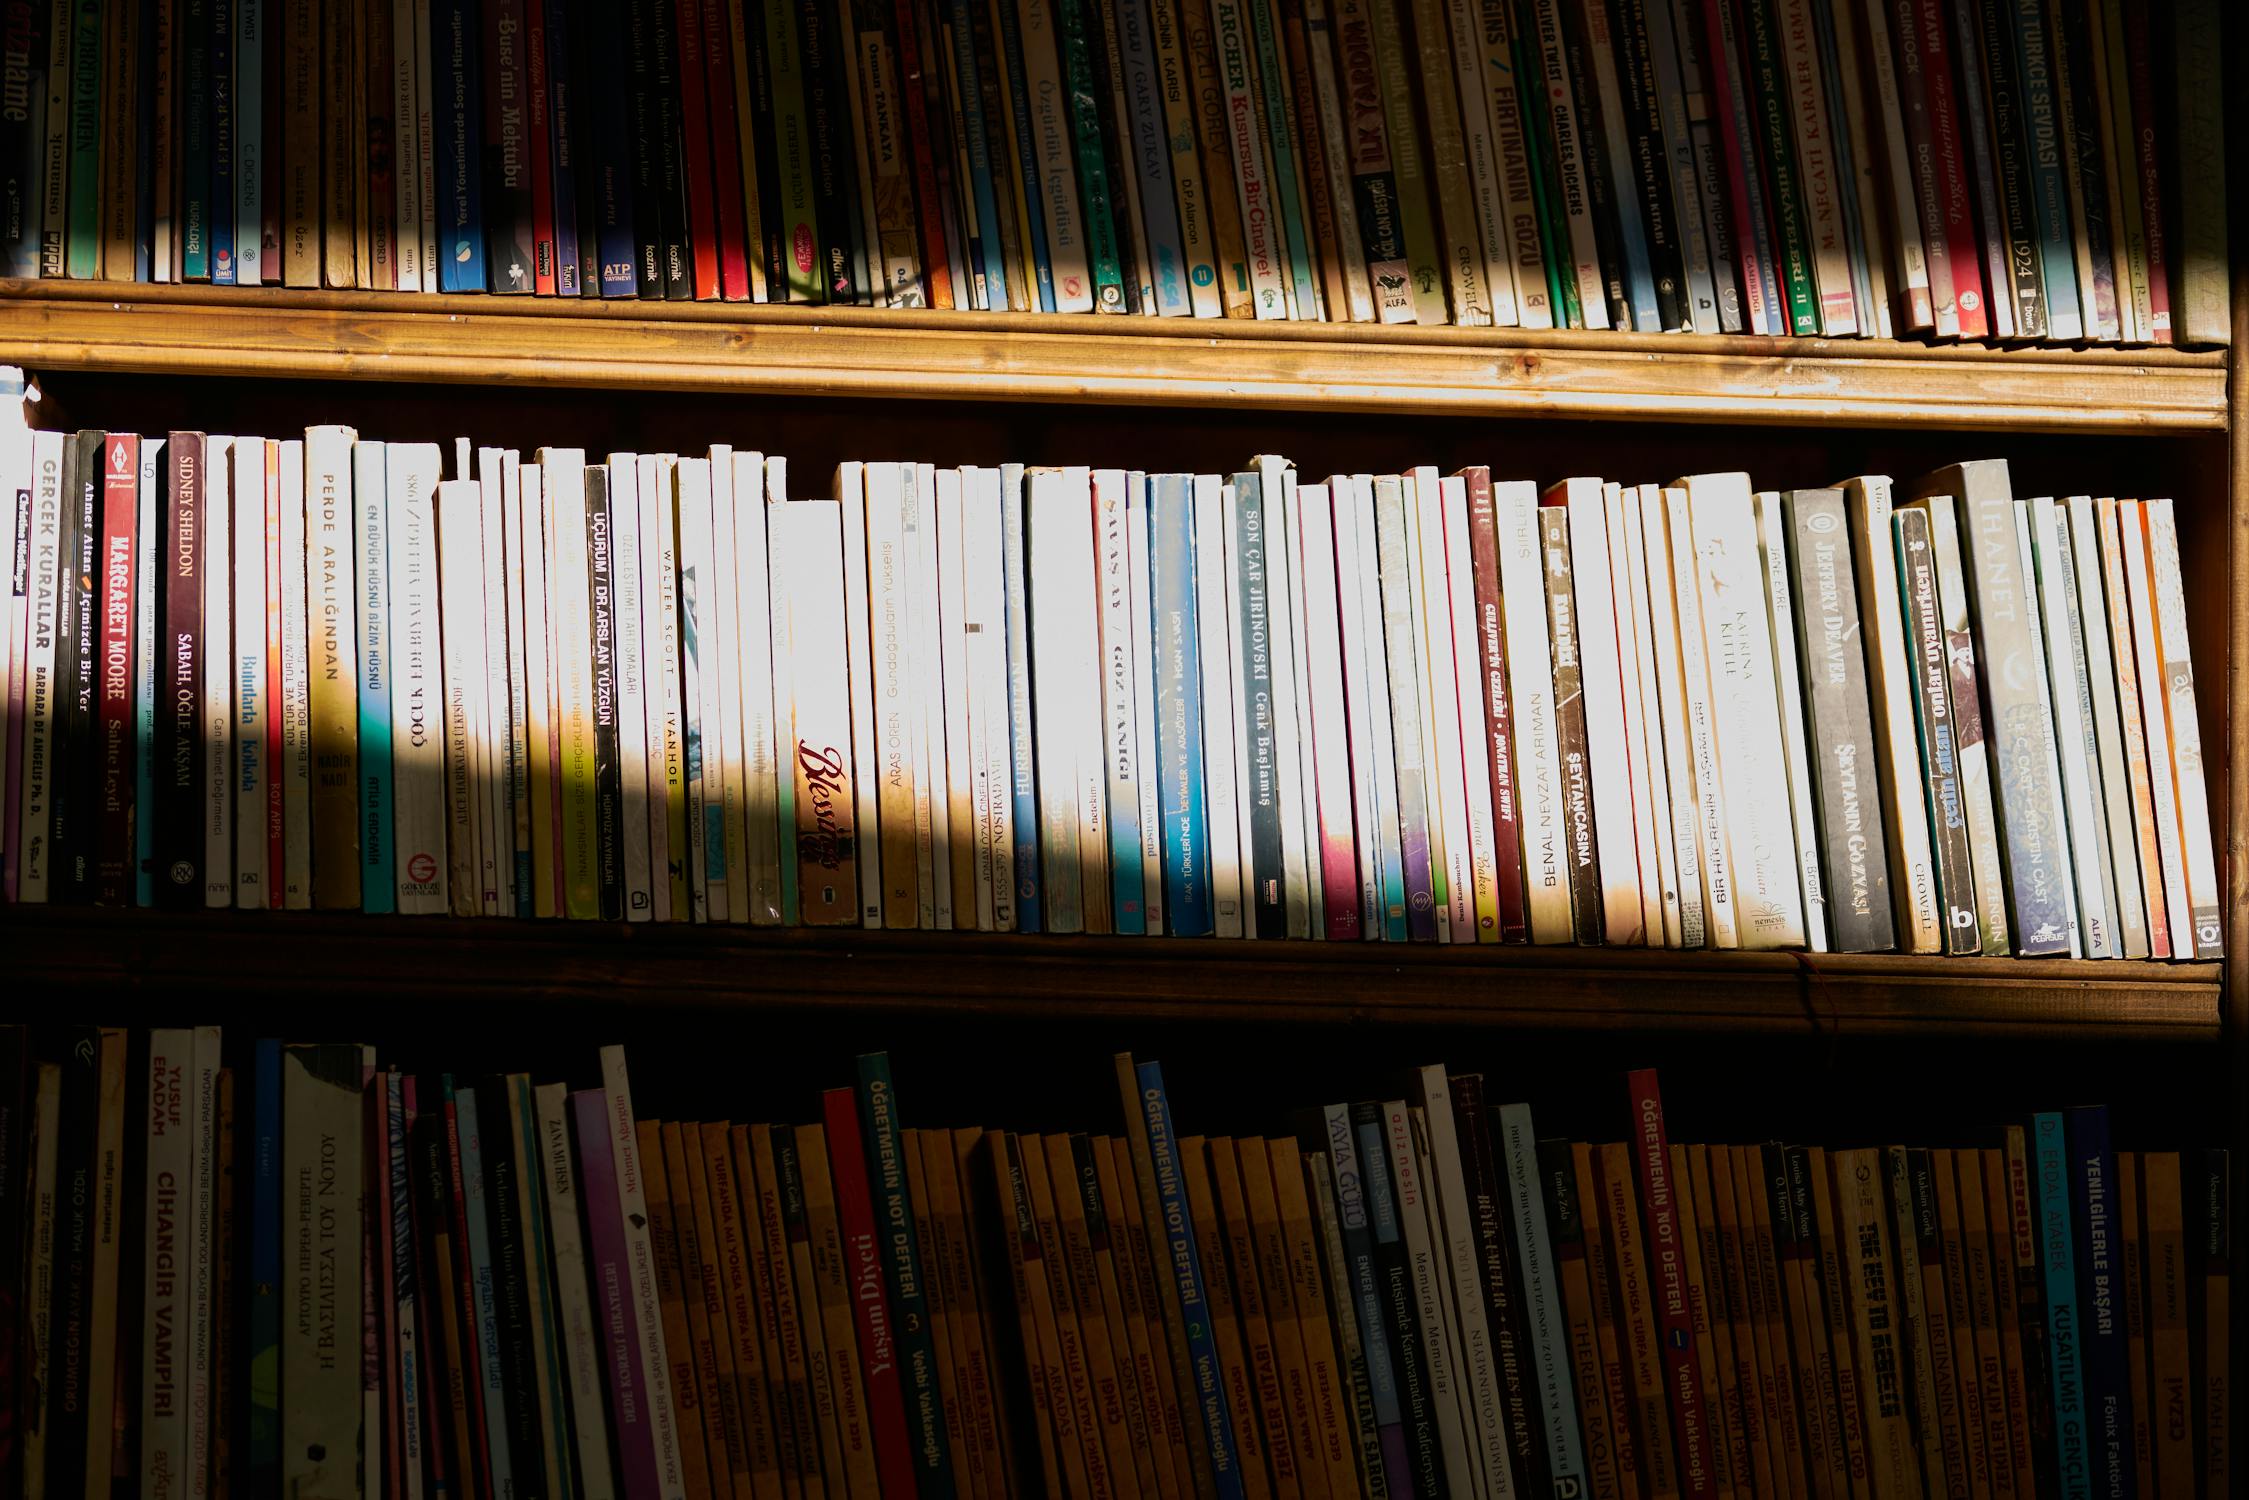 Sunlight casting light on a shelf of books